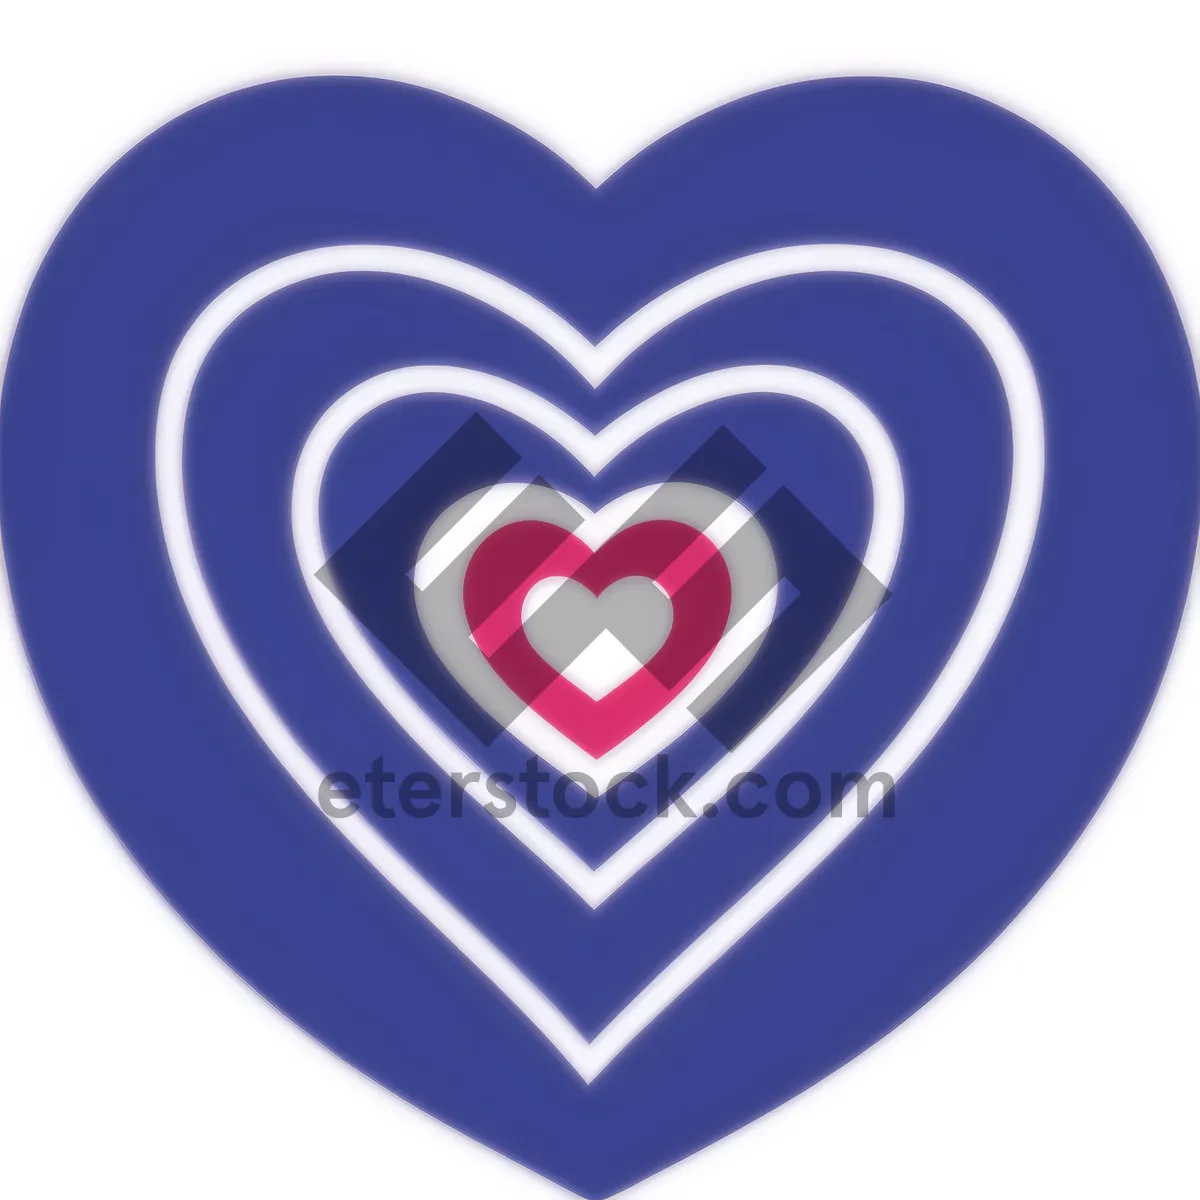 Picture of Love Button Icon - Glossy Heart Symbol for Valentine's Web Design